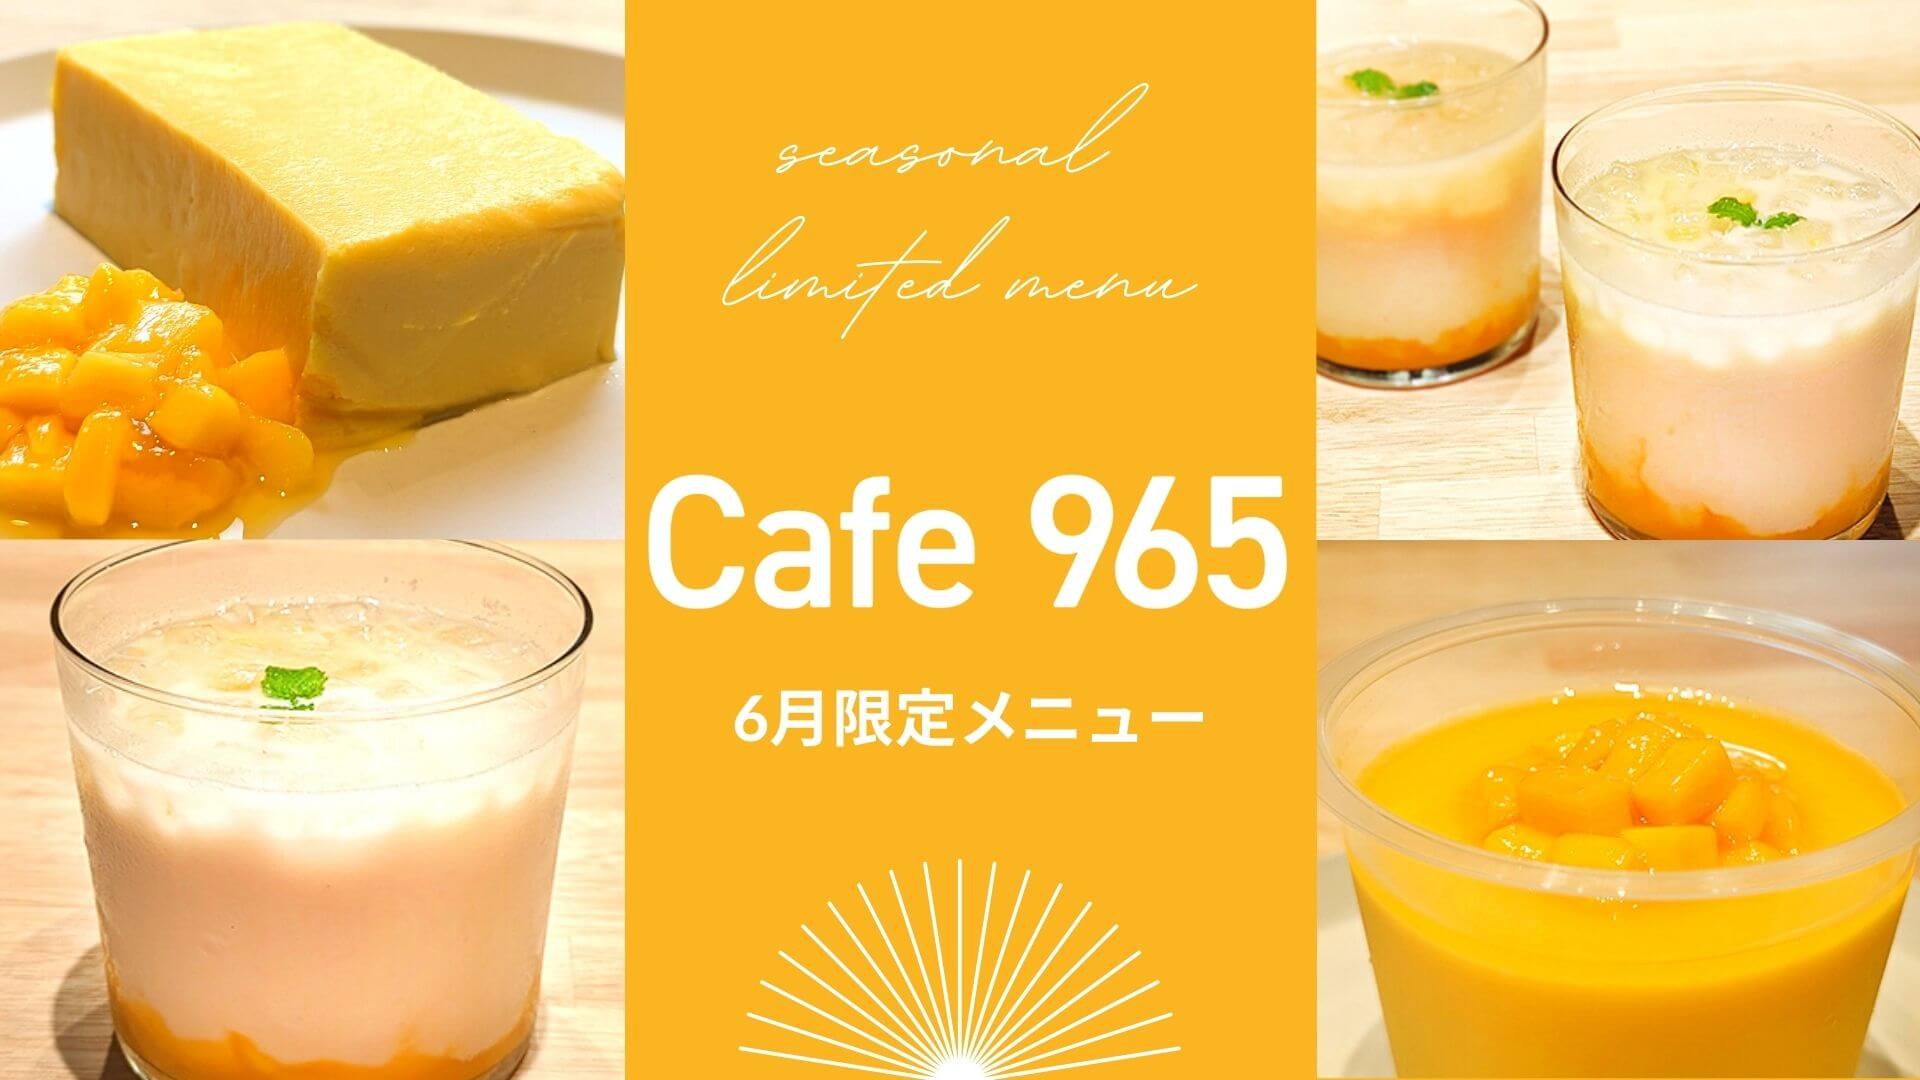 【Cafe965】6月限定・梅雨時に爽やかなスイーツ！マンゴーをたっぷり使用したチーズテリーヌを含む4品が登場